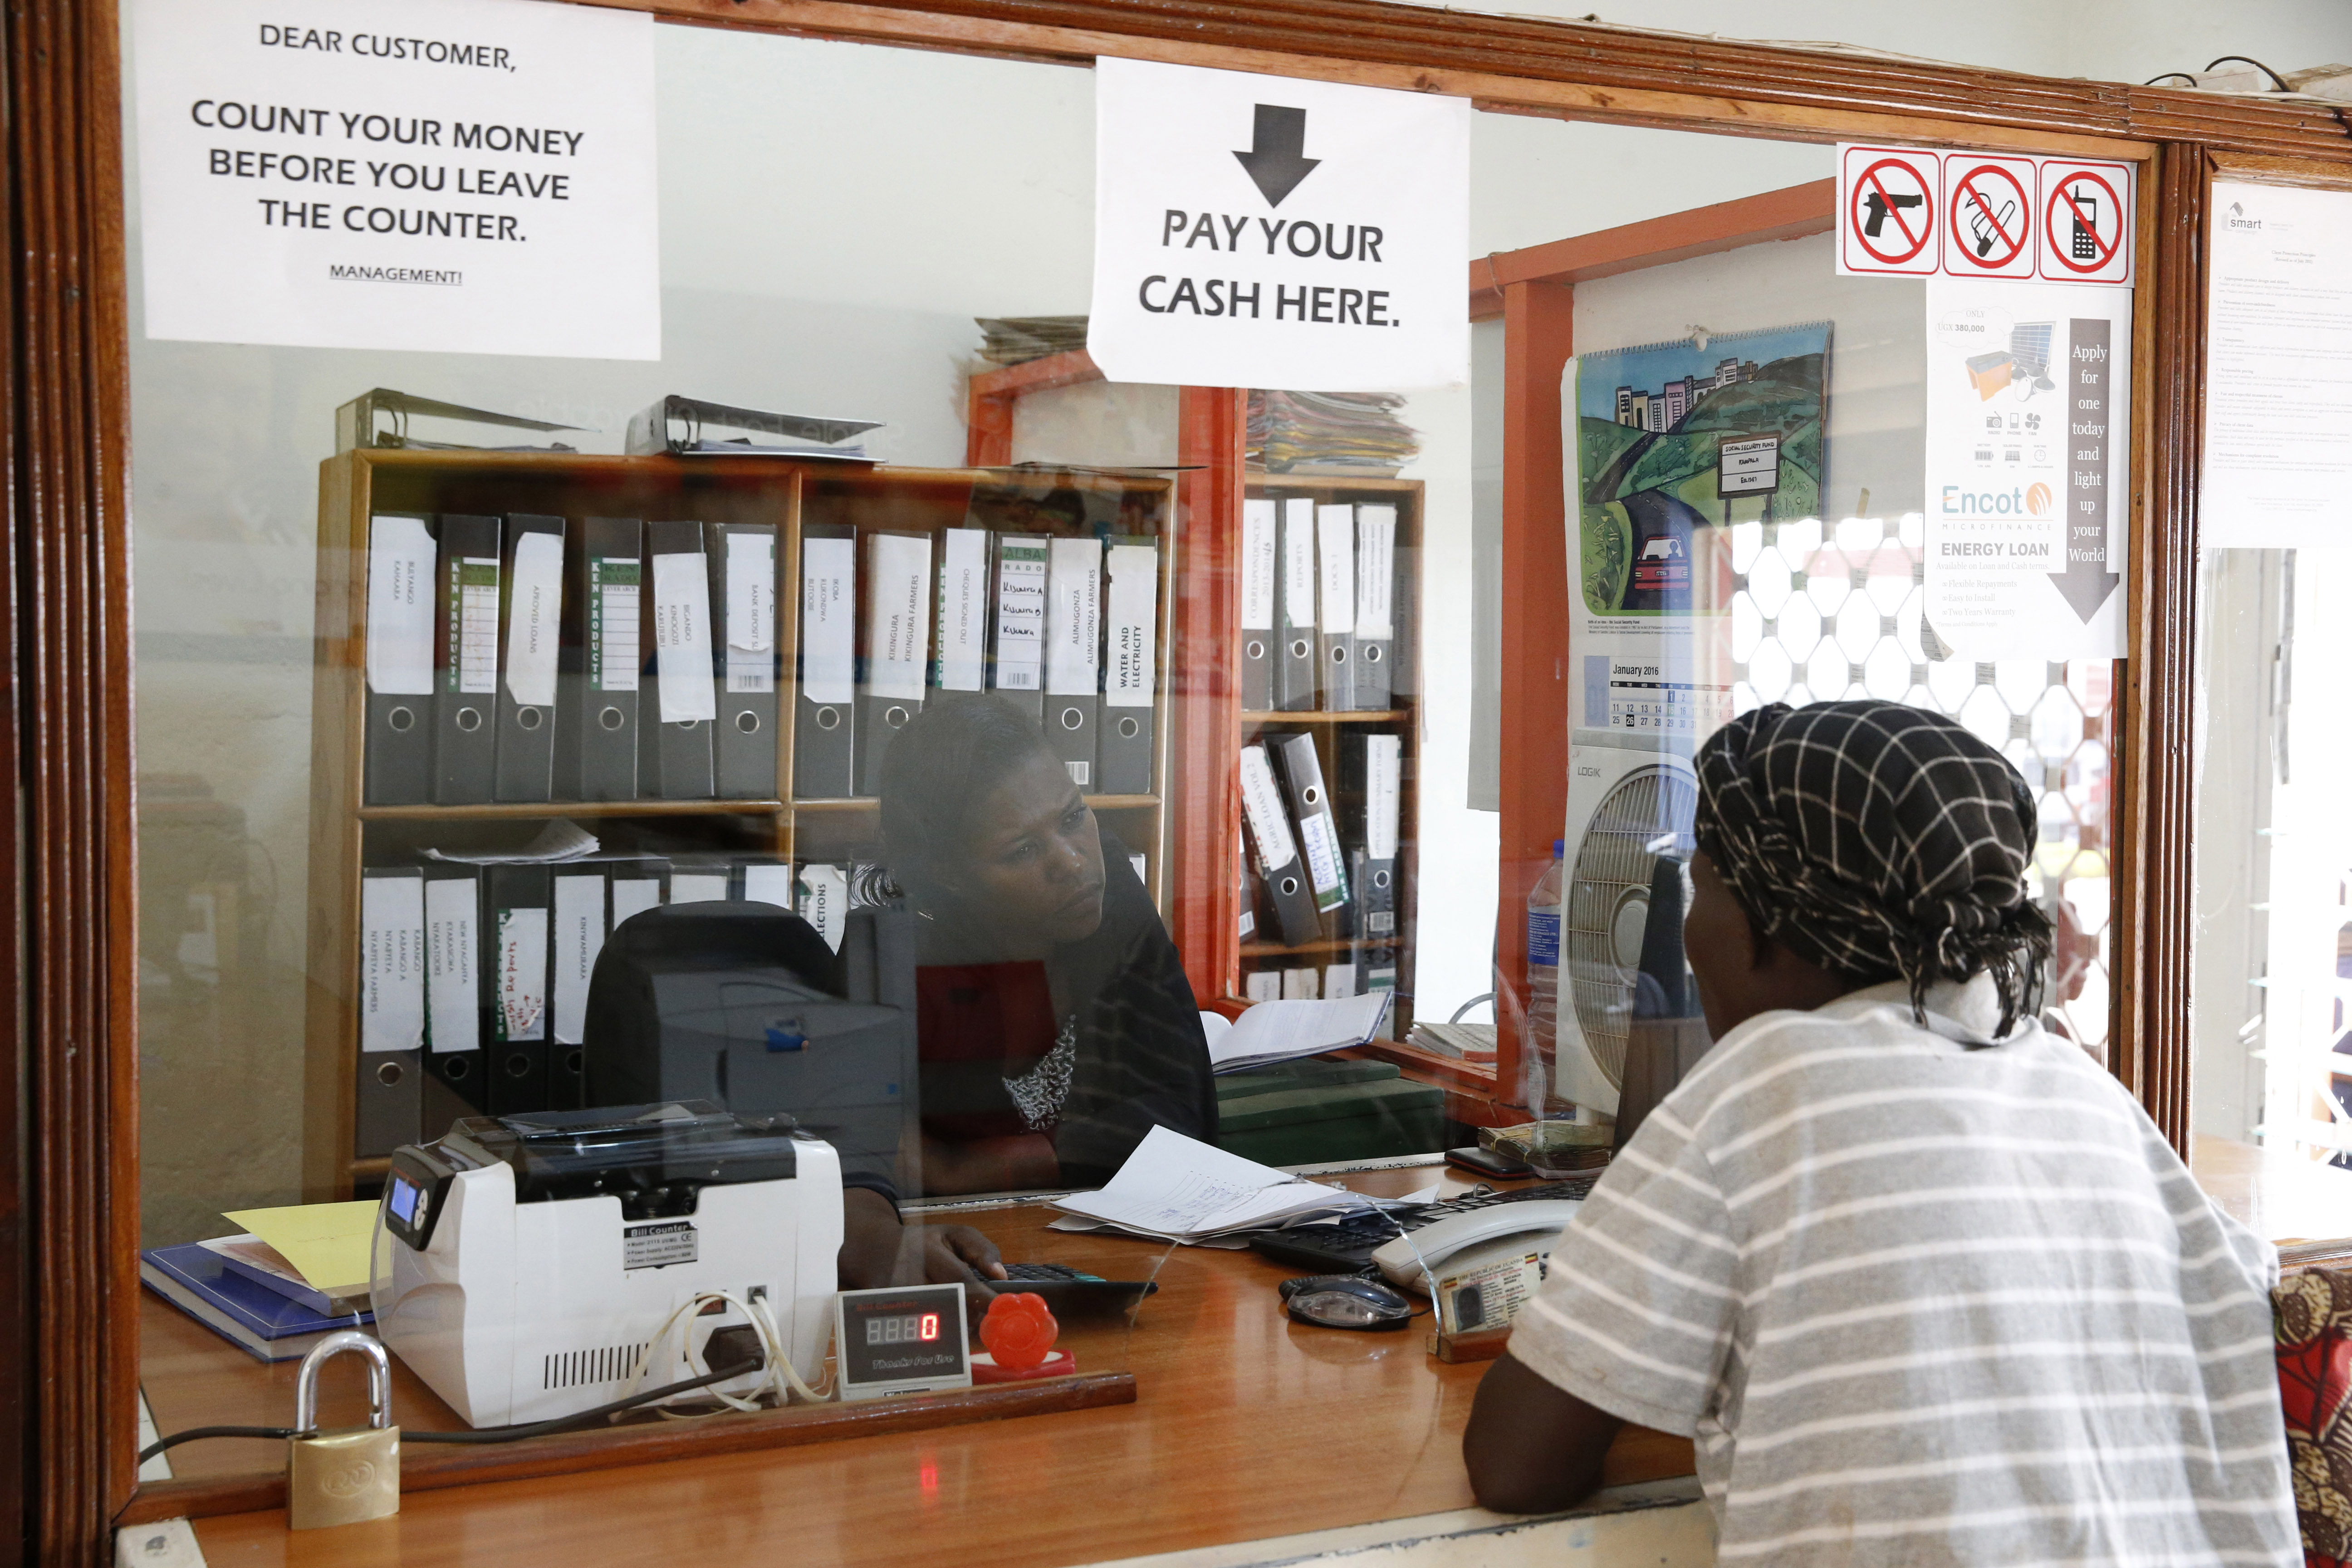 La institución de microfinanciación acompaña a los clientes que no tienen acceso a los bancos tradicionales.